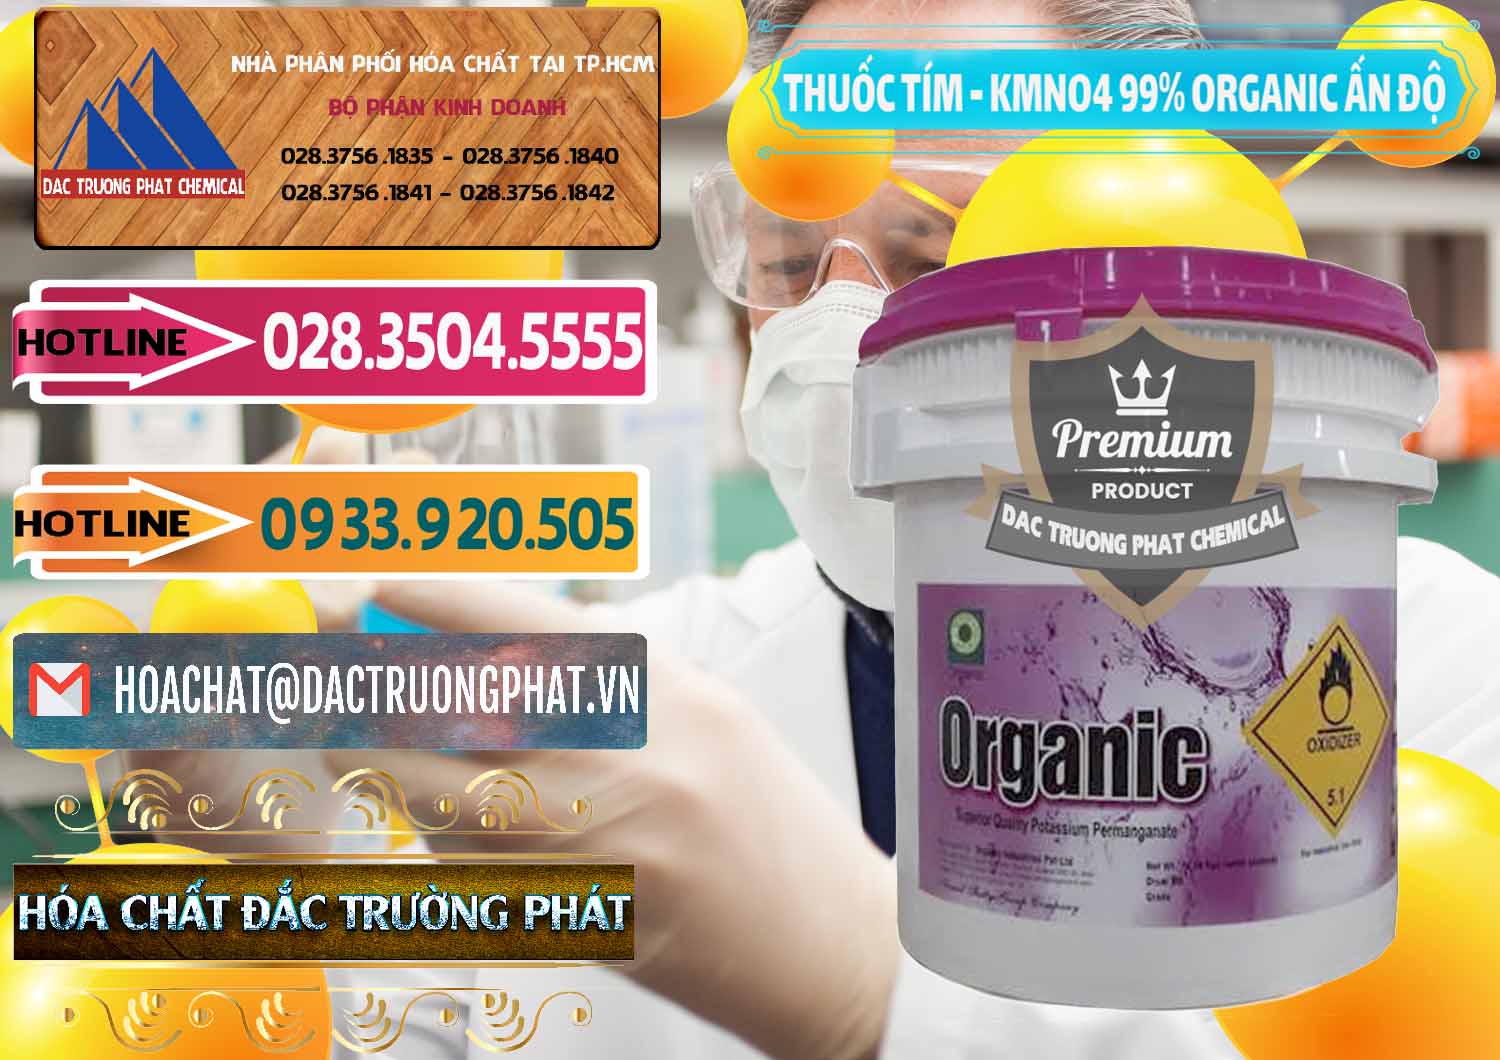 Nơi chuyên nhập khẩu & bán Thuốc Tím - KMNO4 99% Organic Ấn Độ India - 0216 - Nhà cung cấp - phân phối hóa chất tại TP.HCM - dactruongphat.vn